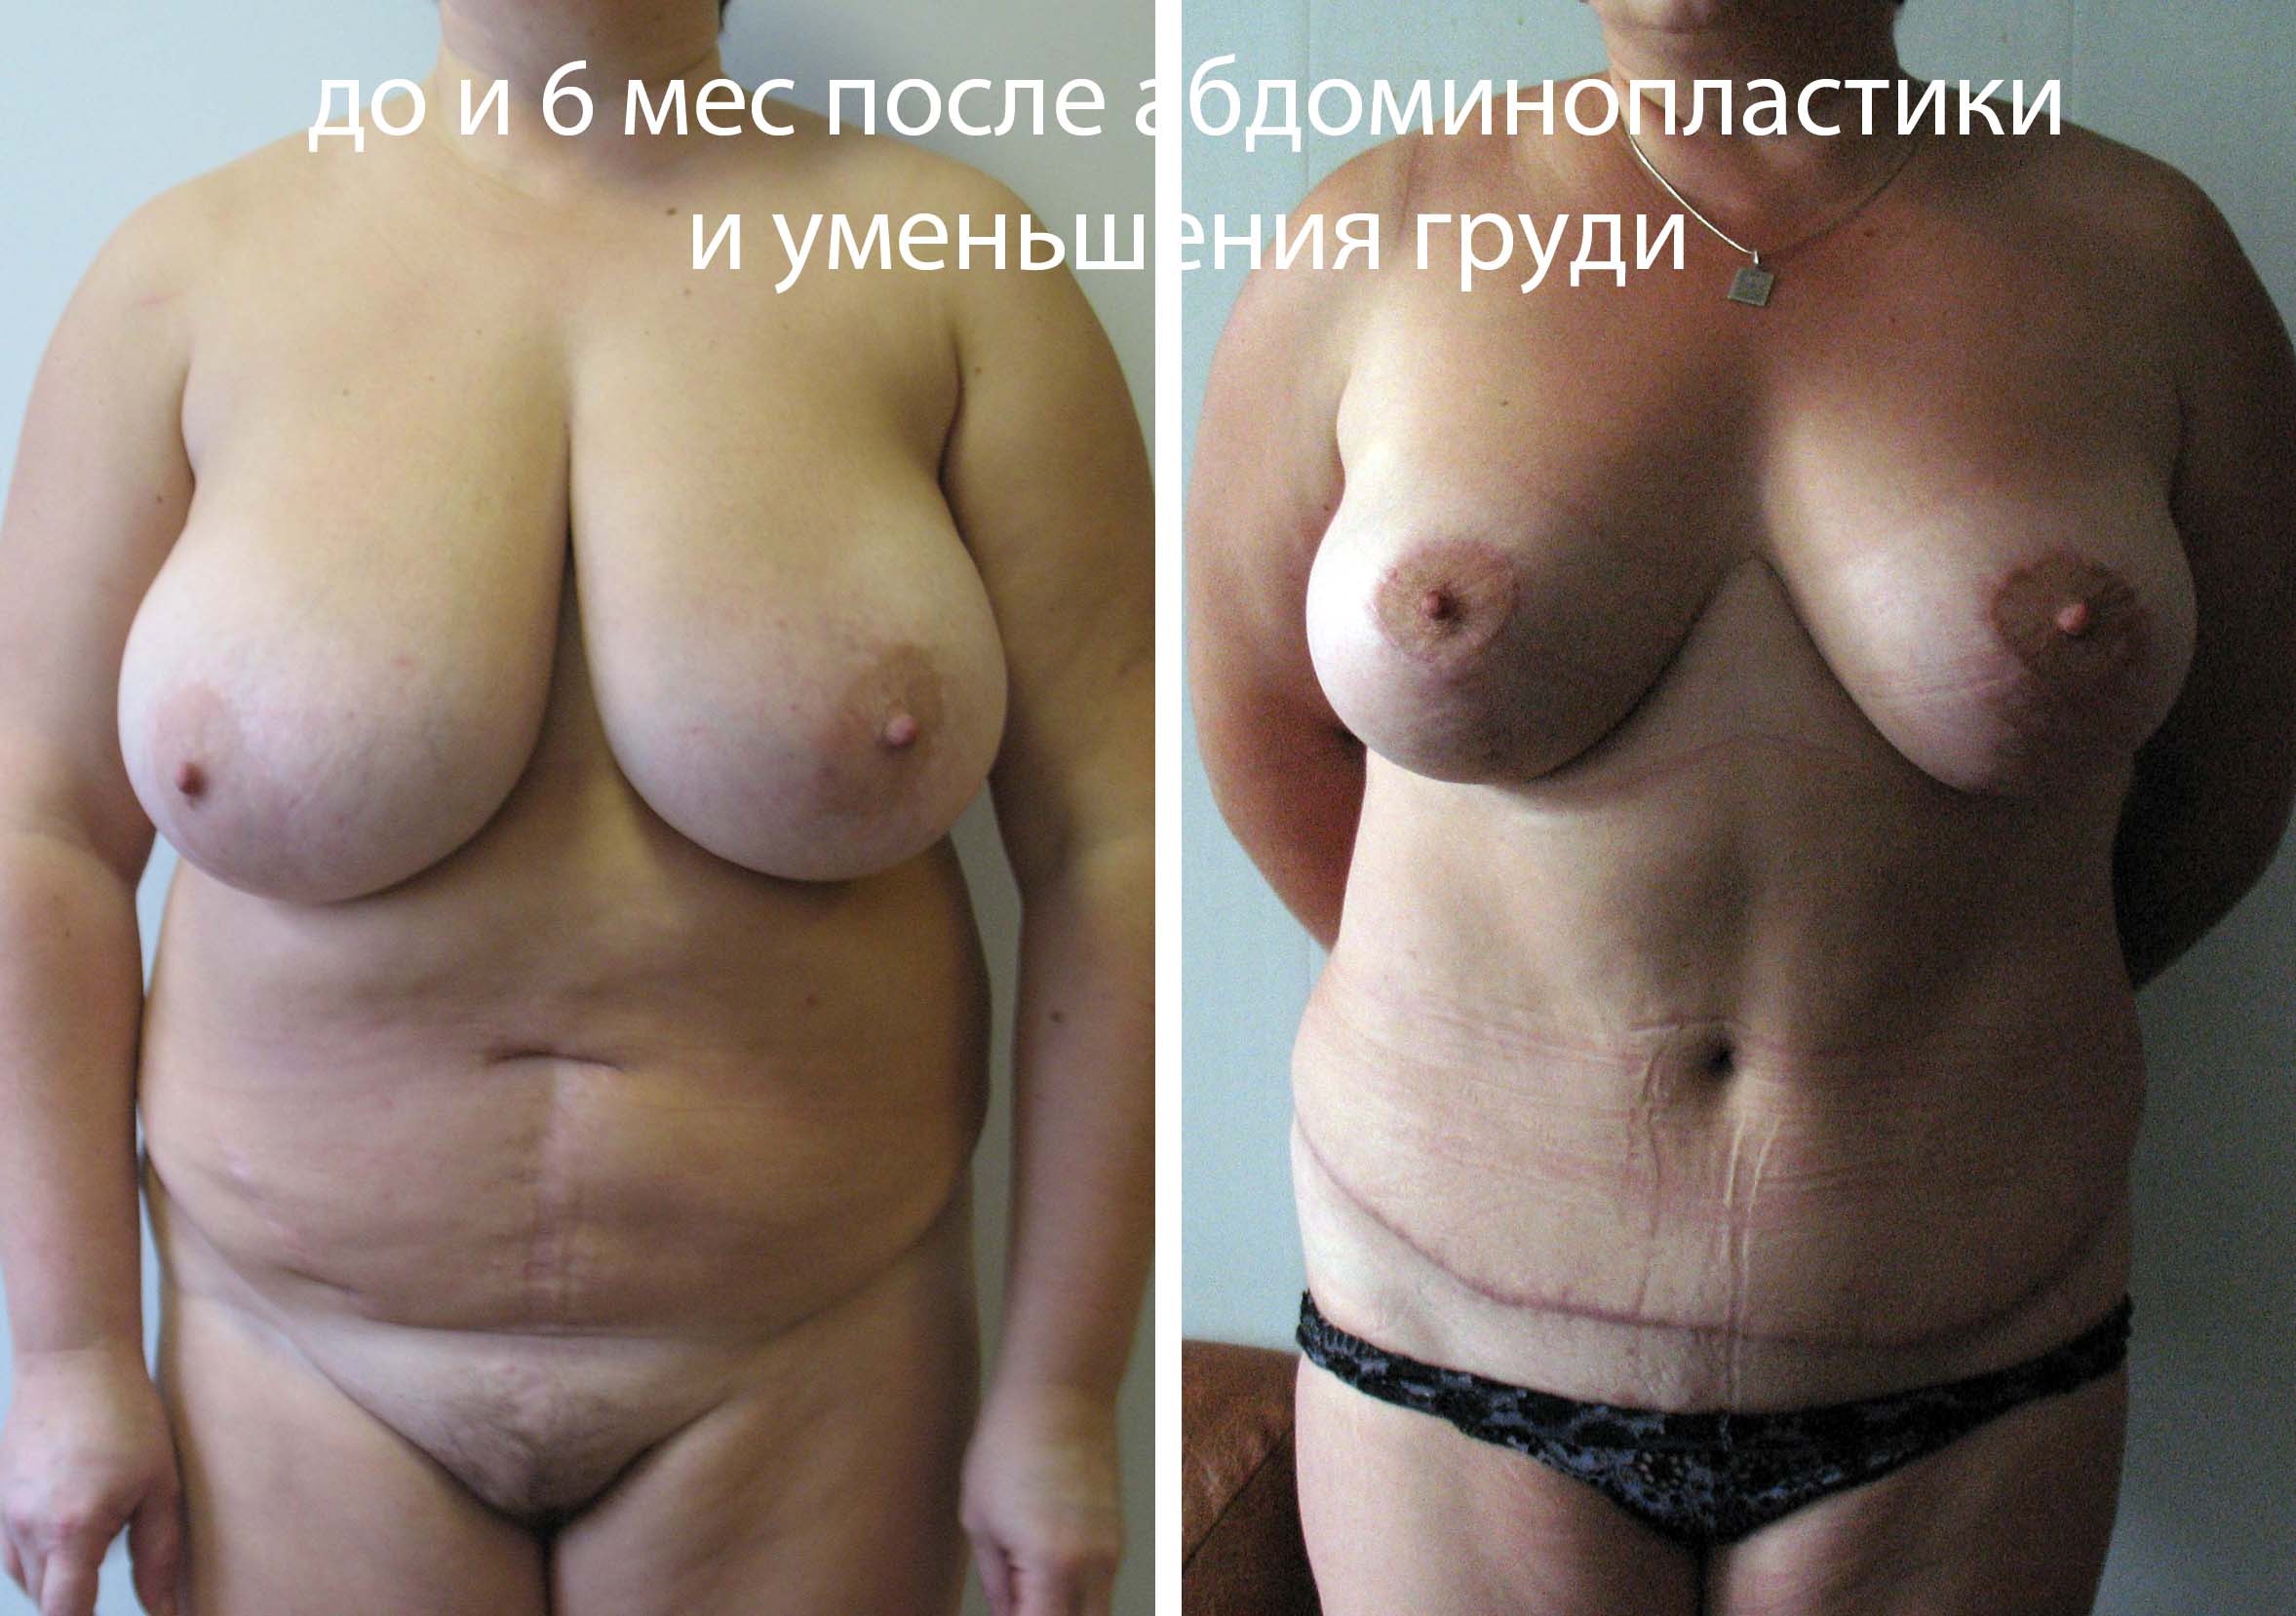 уменьшение груди у женщин фото 7